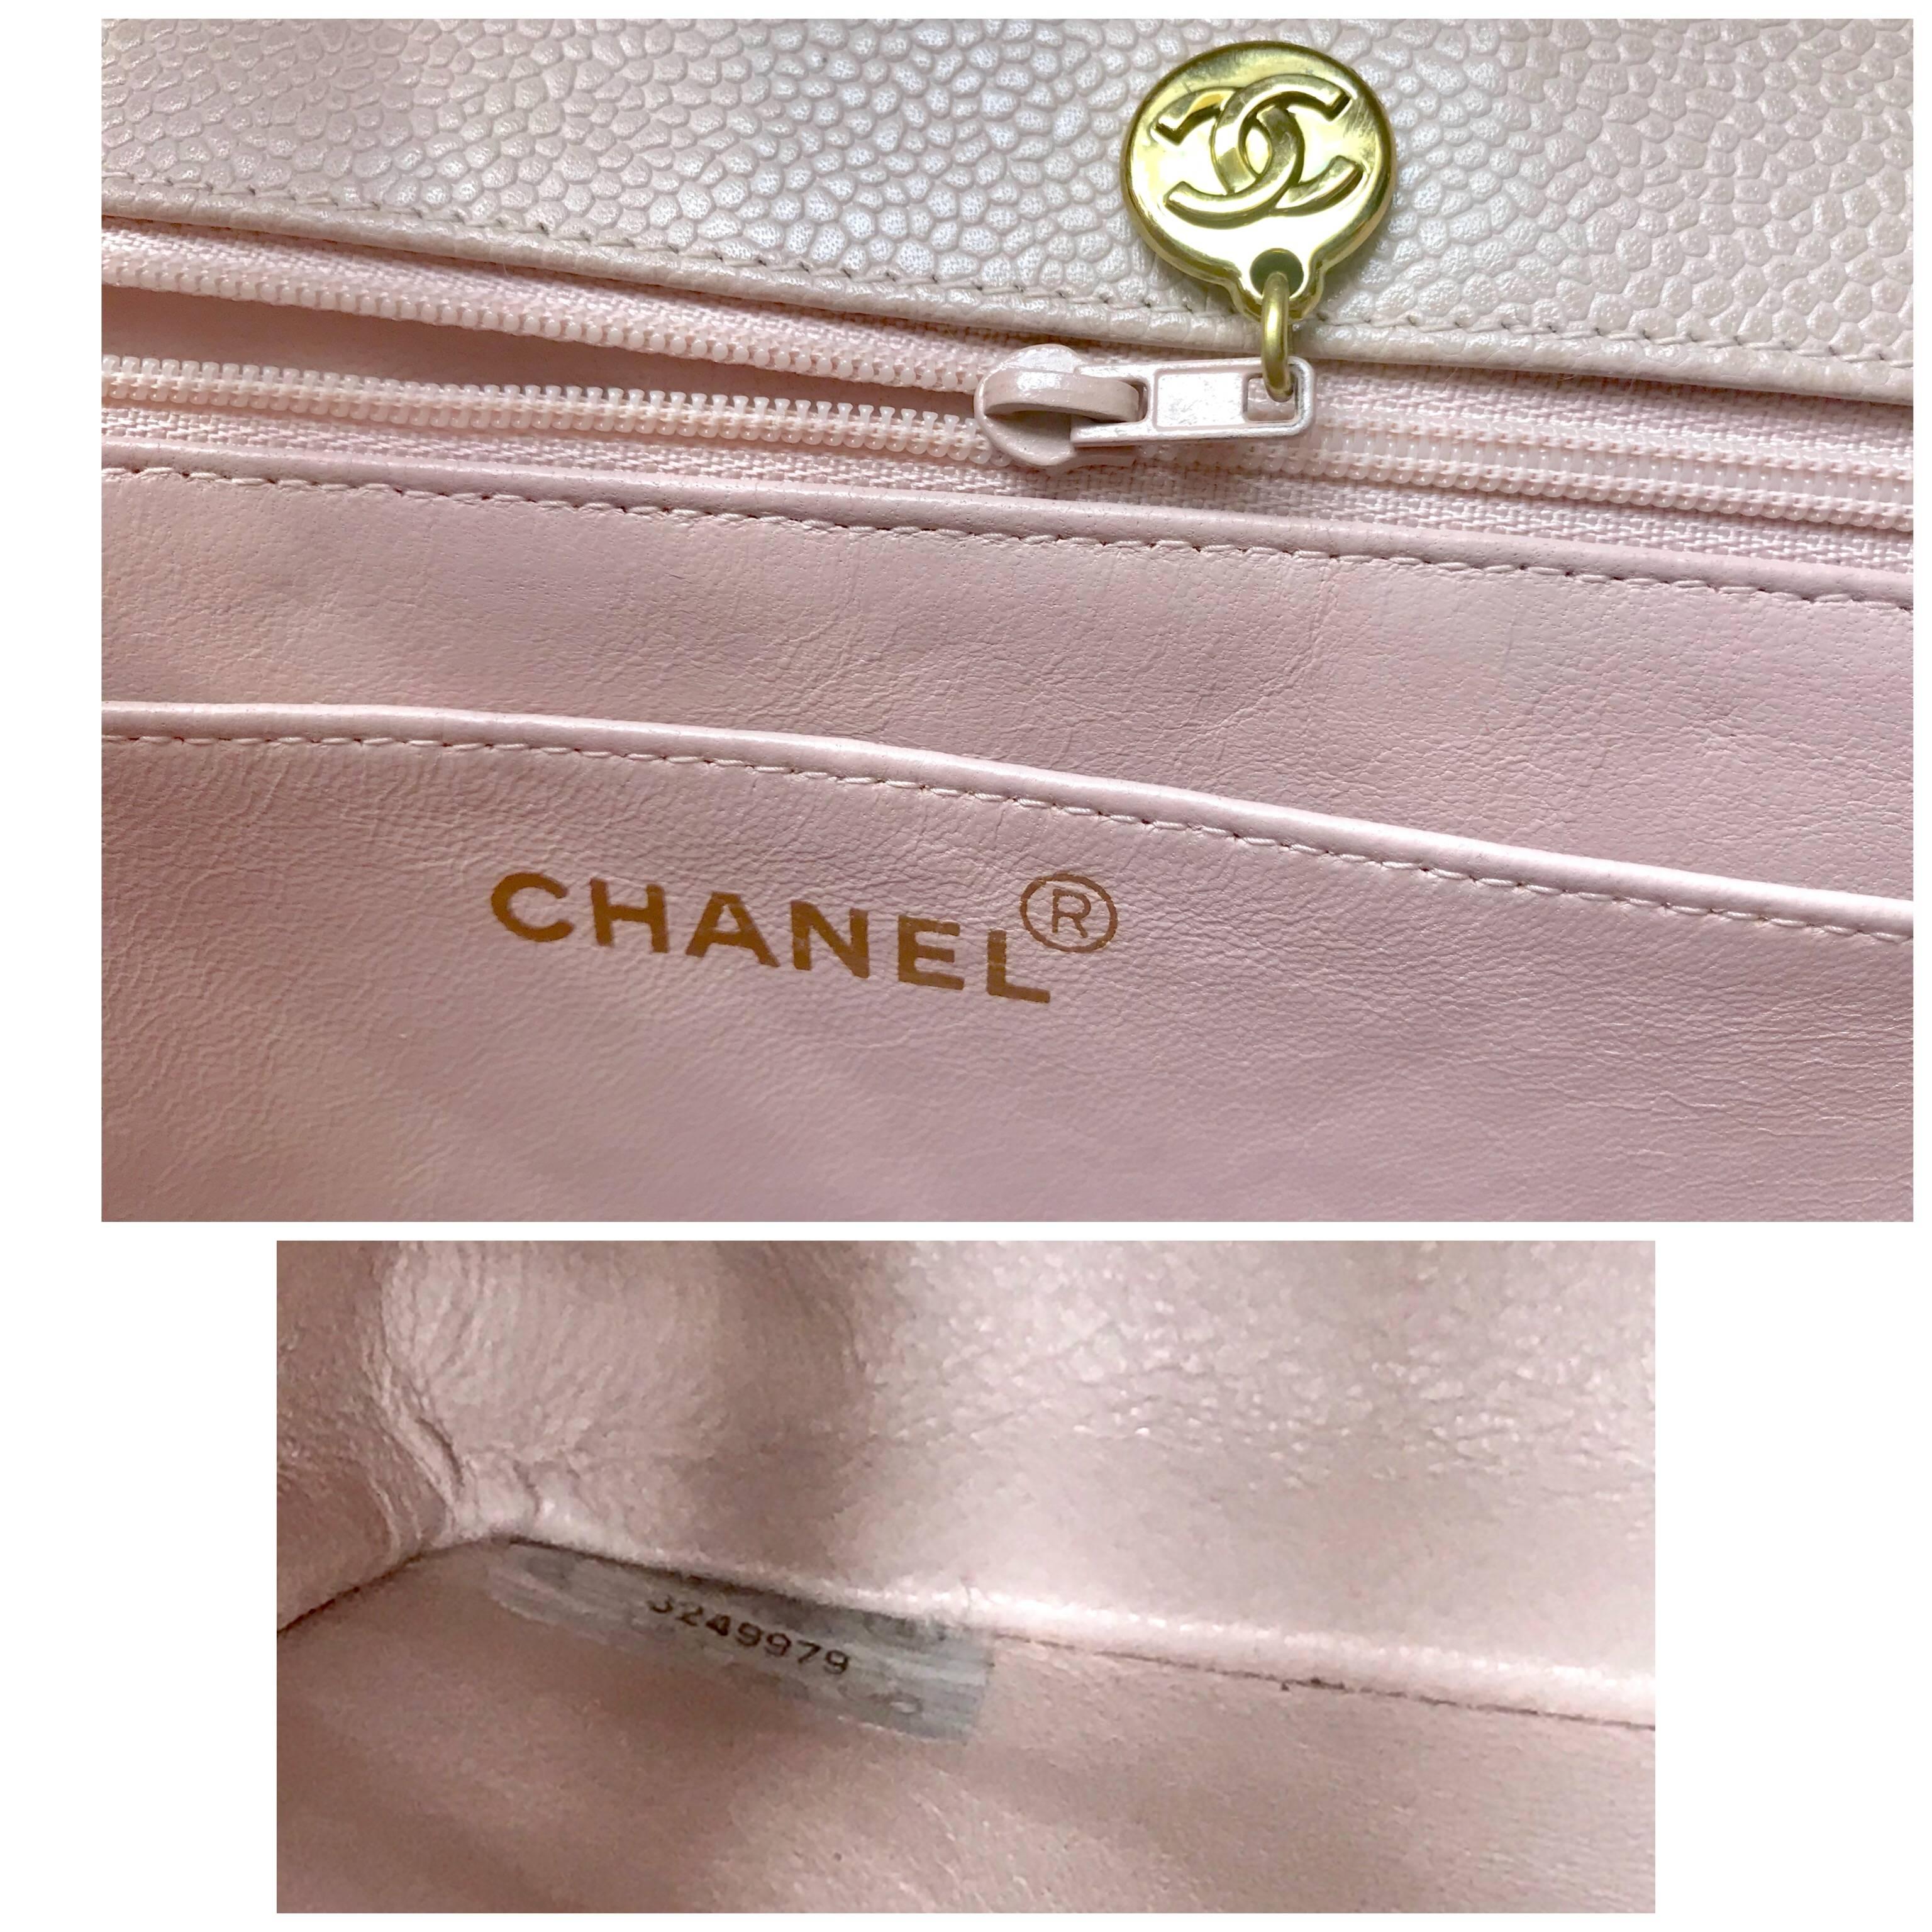 MINT. 1990s. Vintage CHANEL beige jumbo/large 2.55 caviar leather shoulder bag. 2